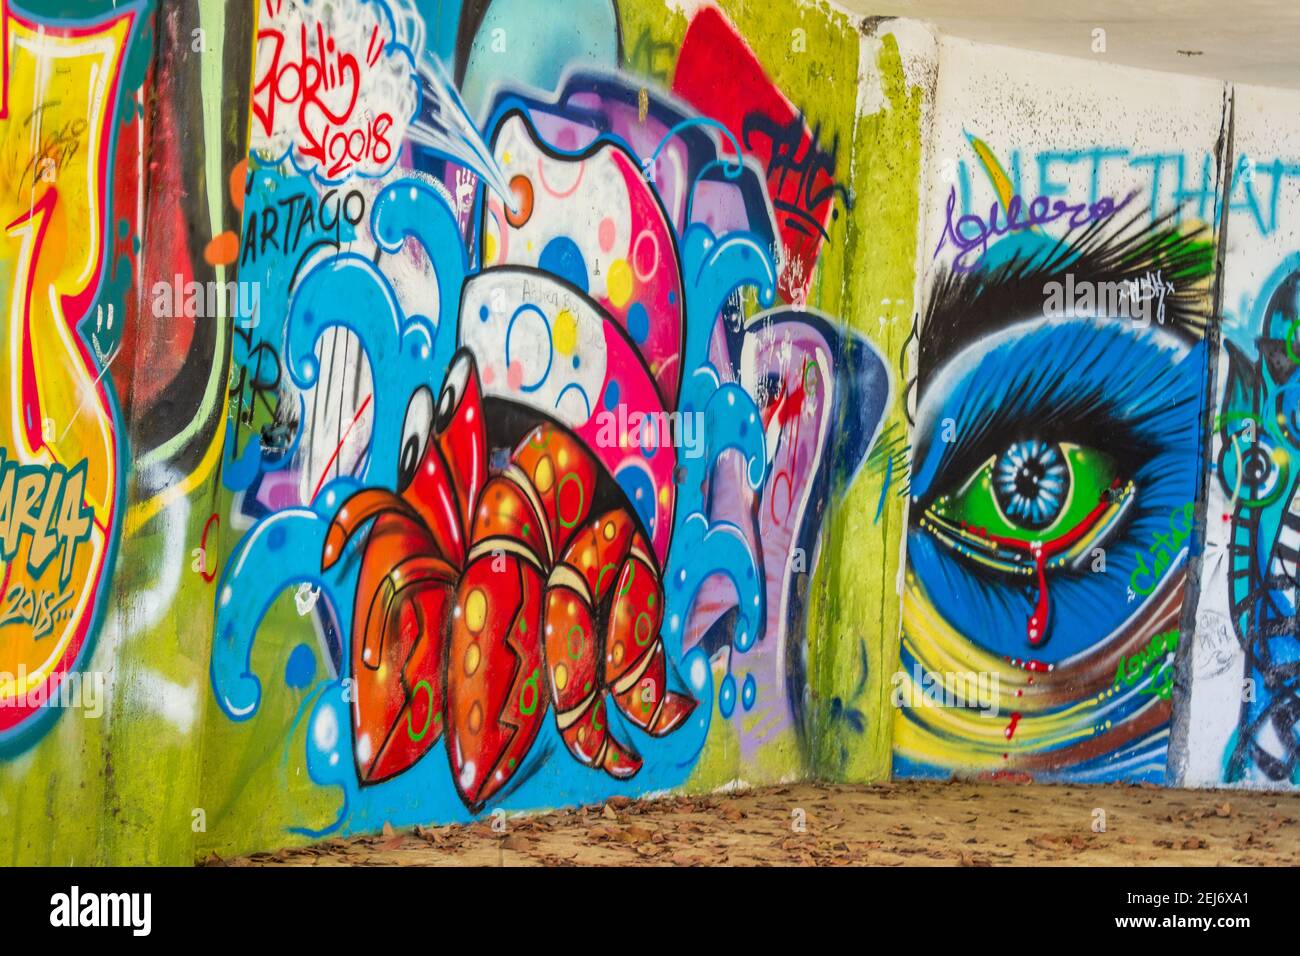 Les ruines d'un complexe, d'un hôtel ou d'une maison rumeur fournissent une toile pour le travail artistique de graffiti dans la jungle près de Jaco, Costa Rica. Banque D'Images